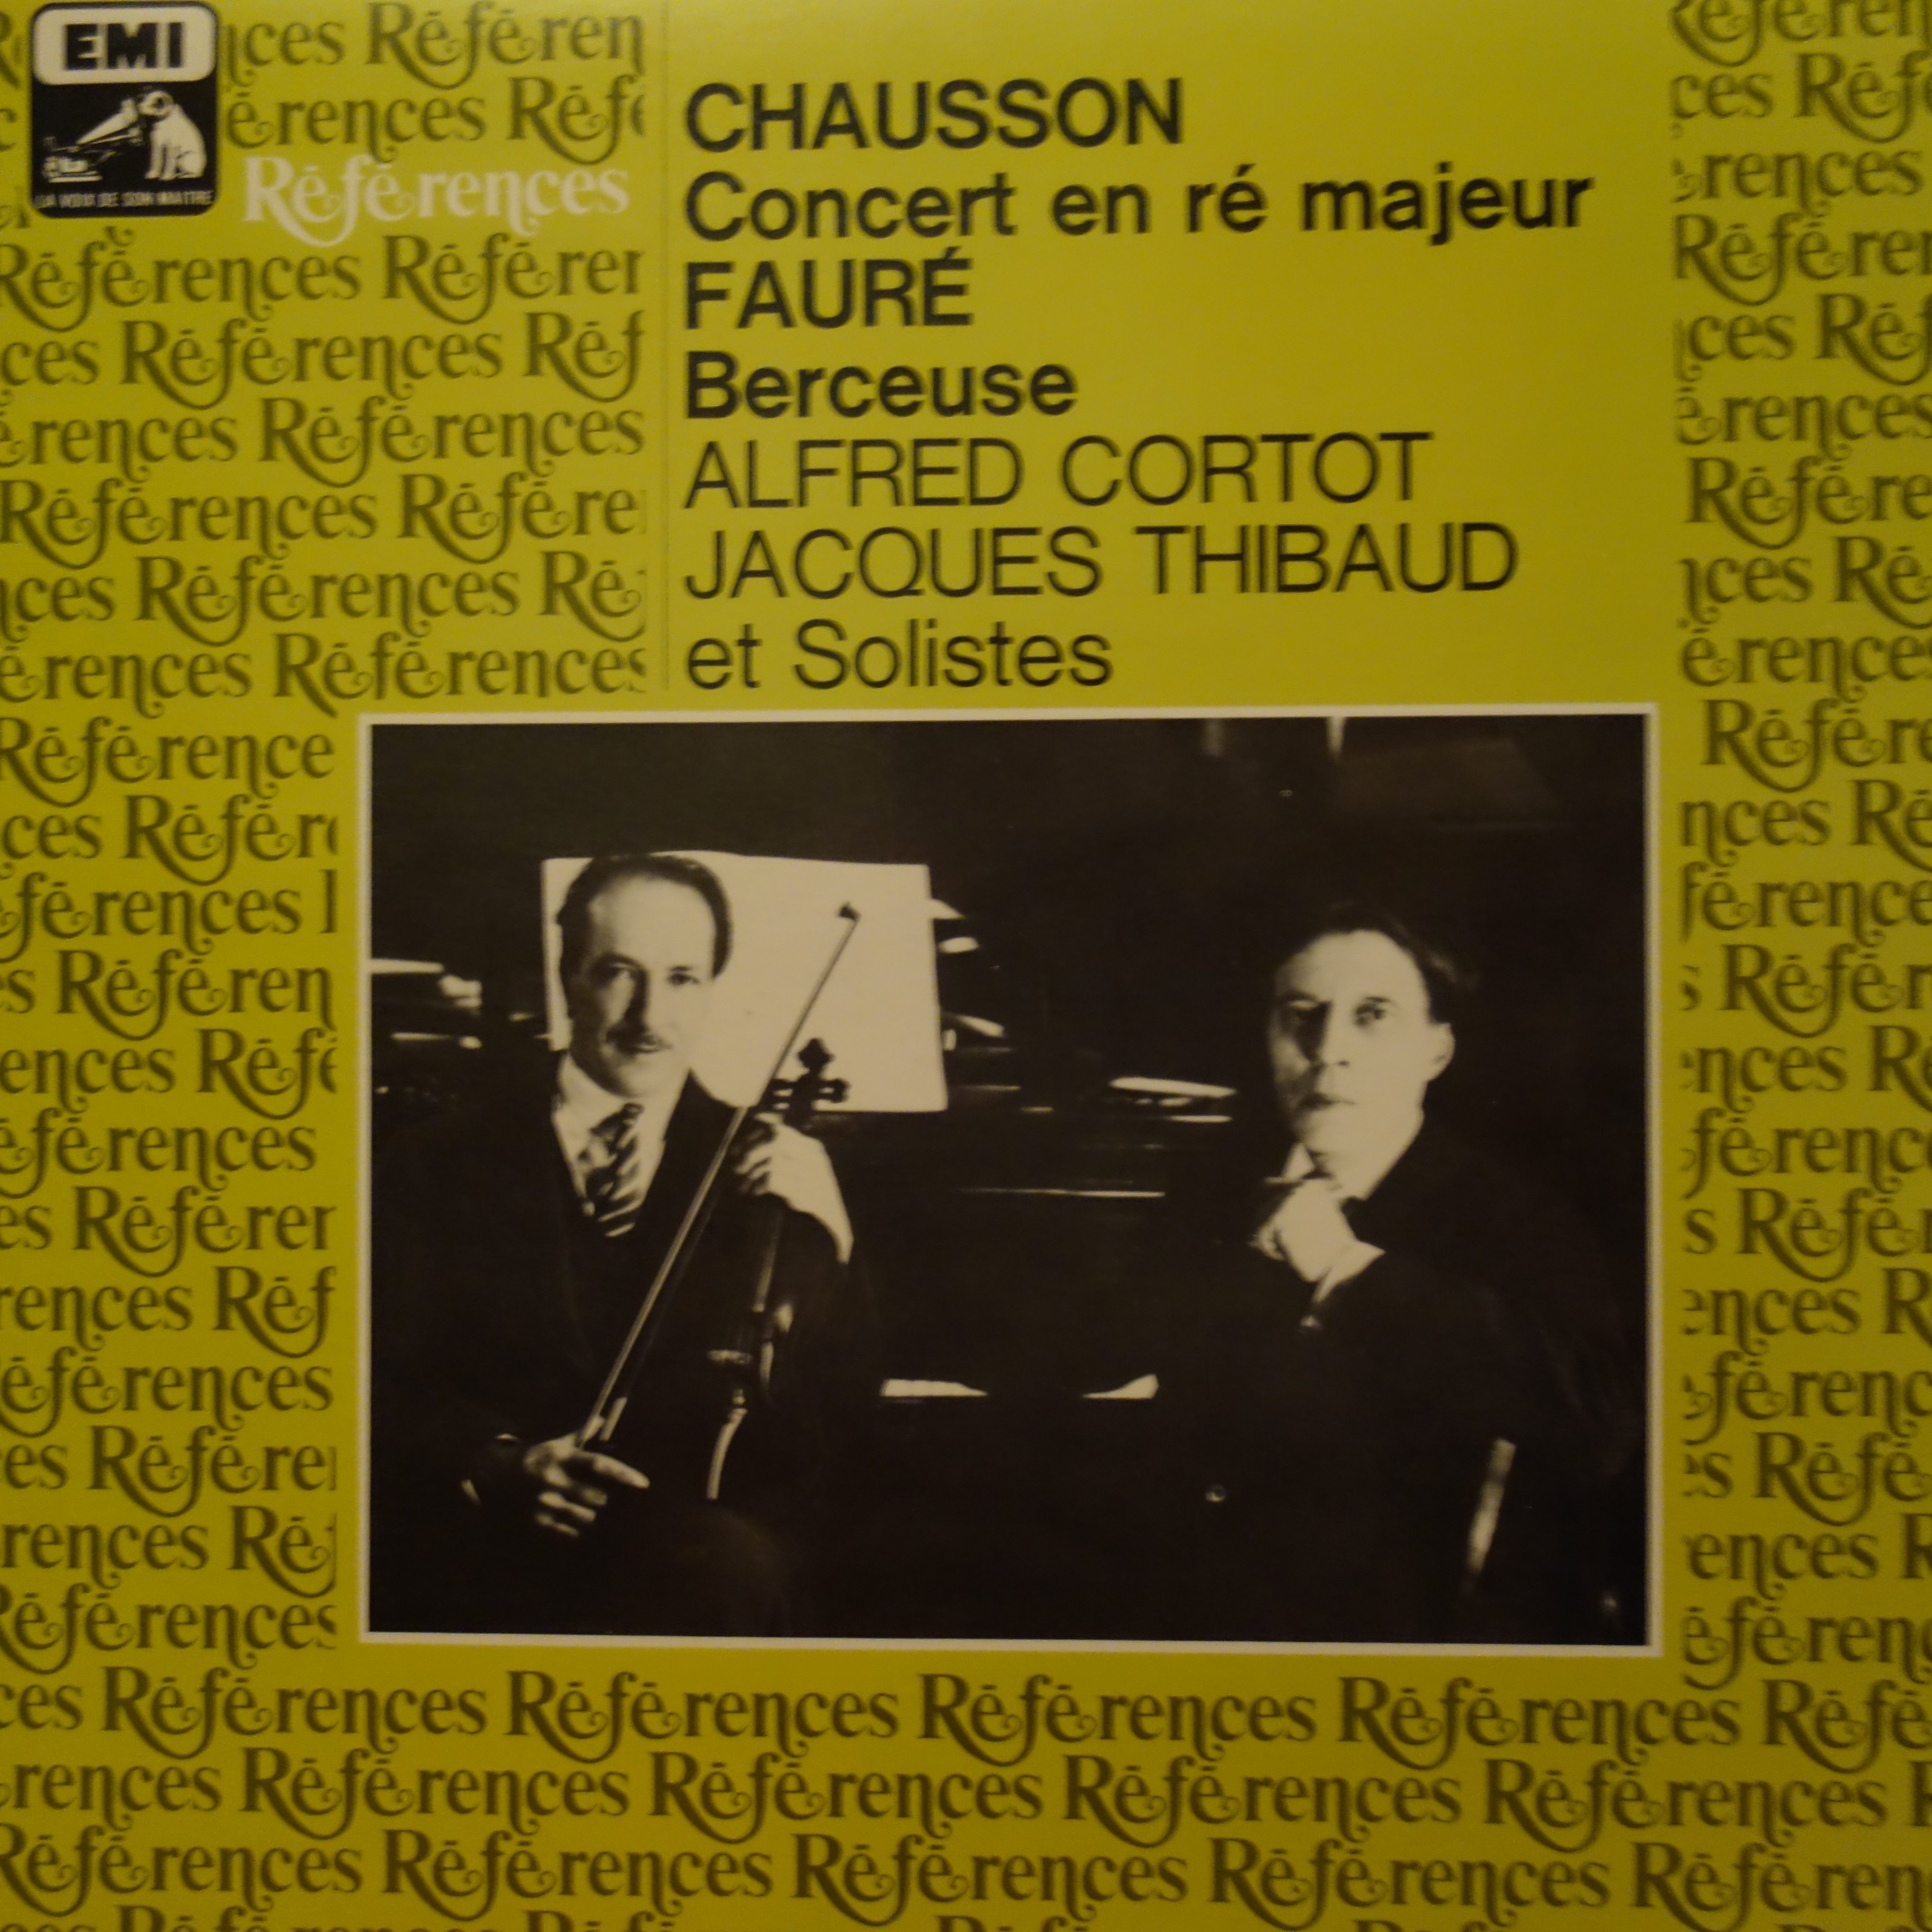 1C 051-03719 Chausson Concert en re majeur Faure Berceuse / Cortot / Thibaud